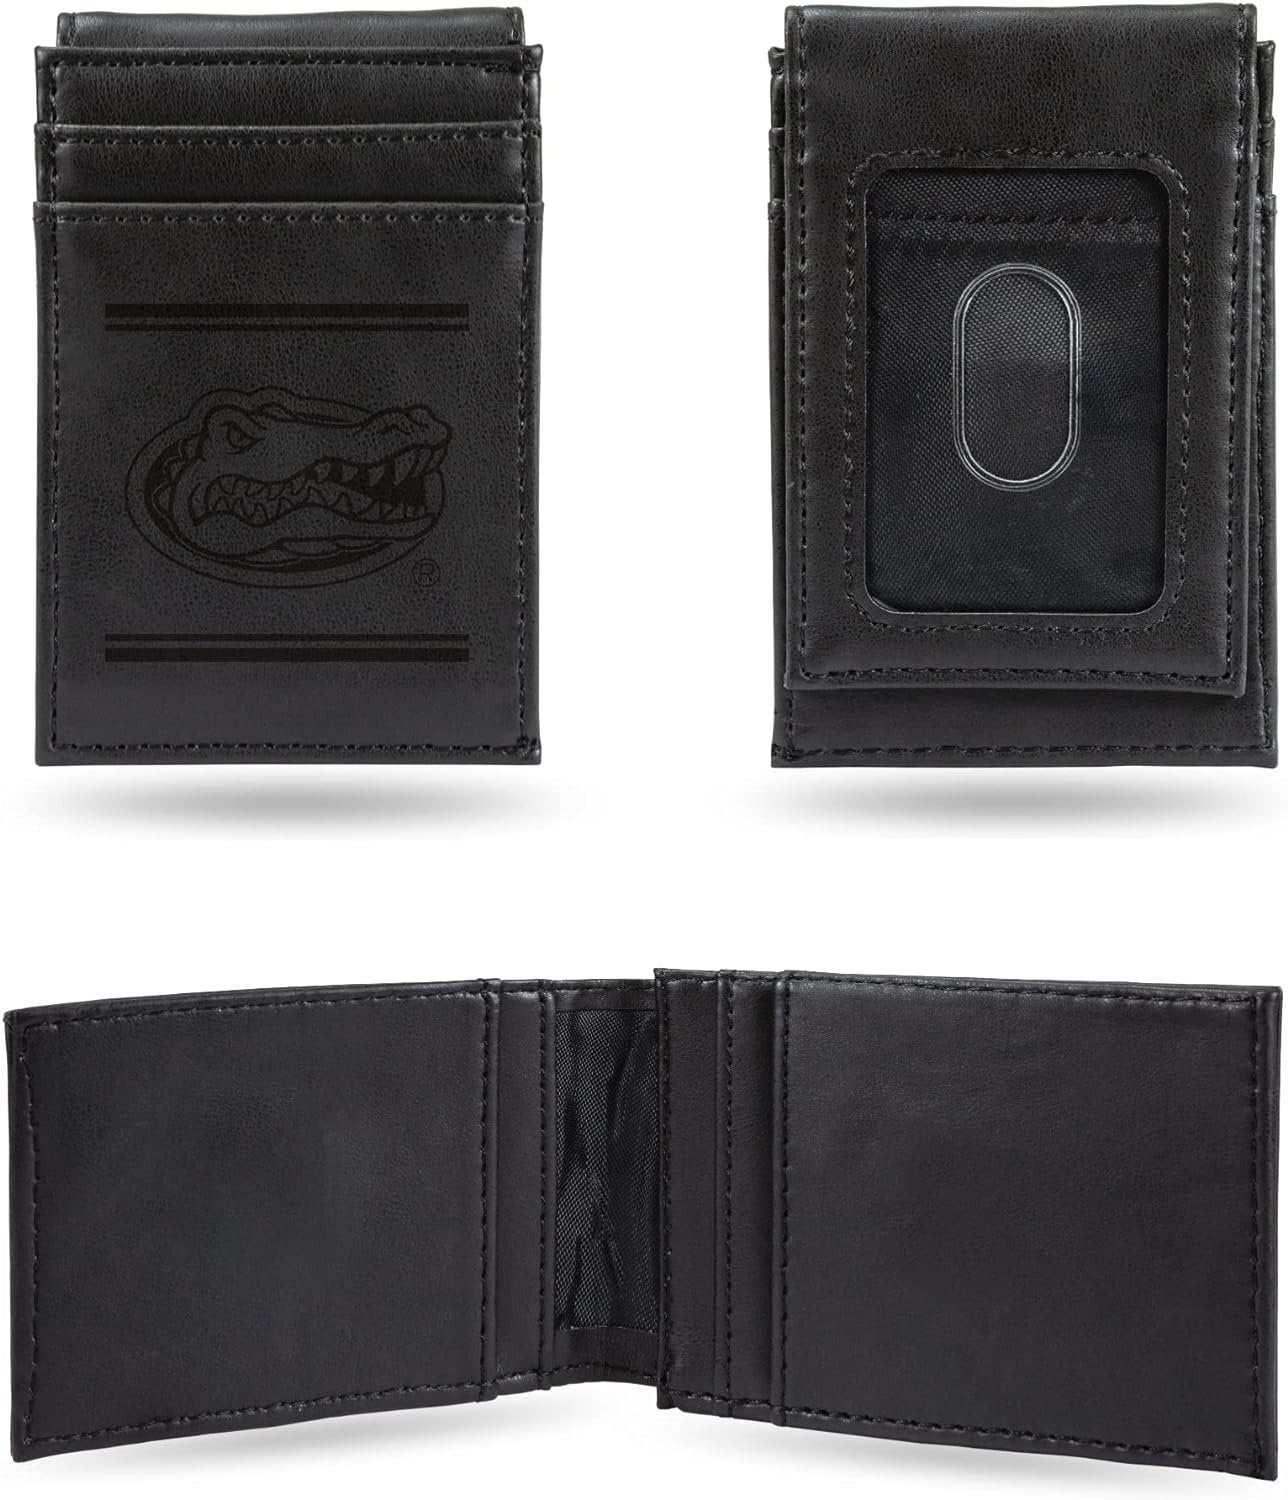 University of Florida Gators Premium Black Leather Wallet, Front Pocket Magnetic Money Clip, Laser Engraved, Vegan